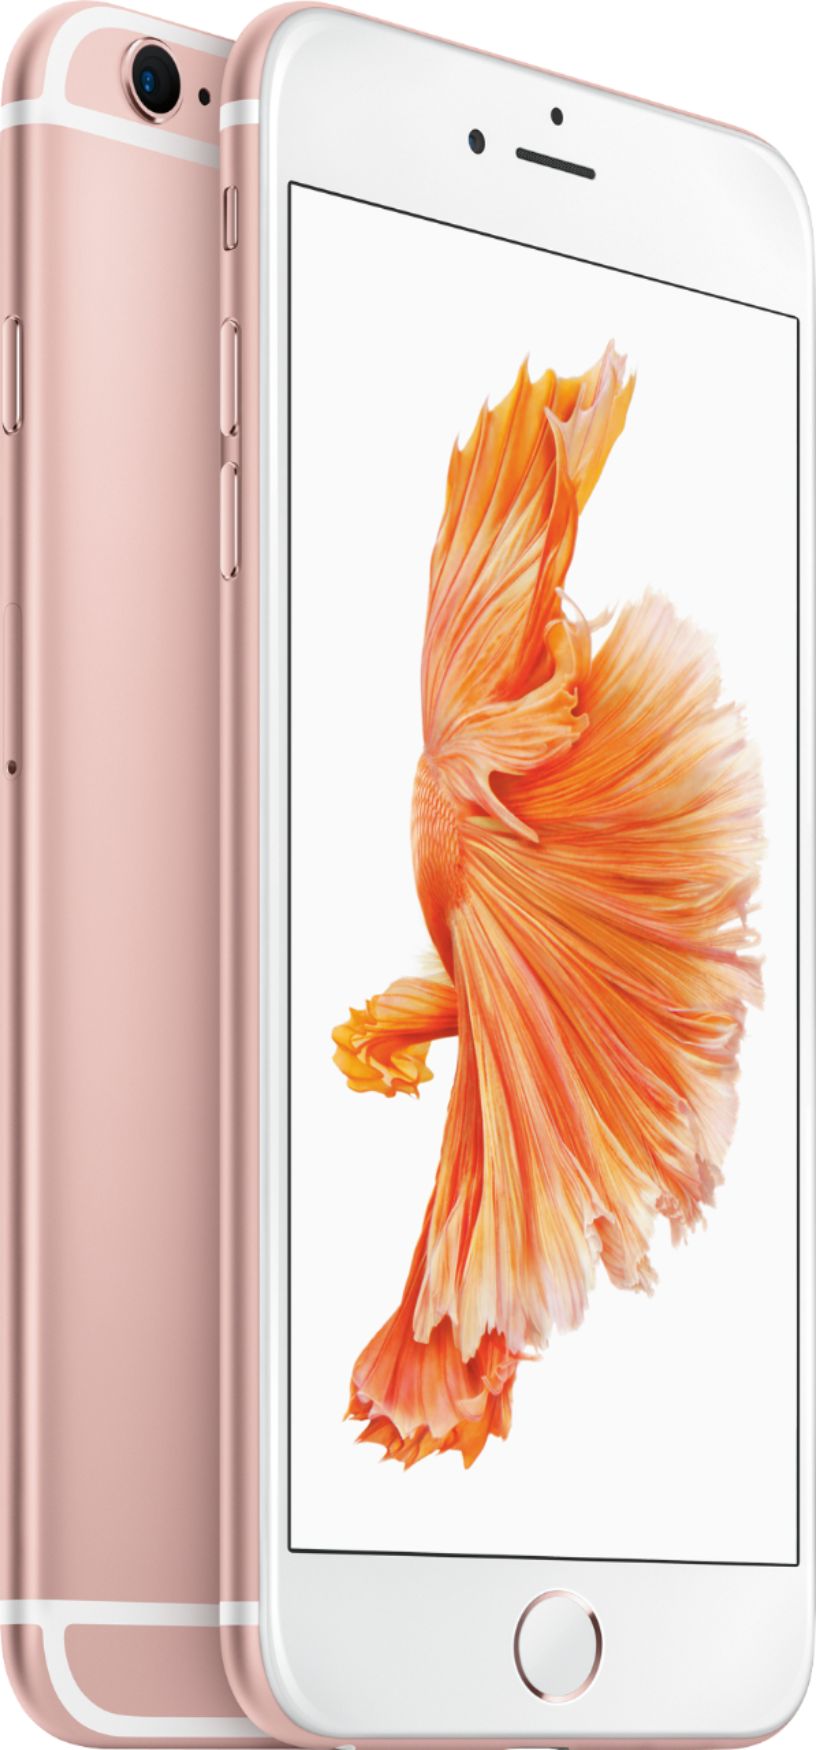 スマートフォン/携帯電話 スマートフォン本体 Best Buy: Apple iPhone 6s Plus 32GB Rose Gold (AT&T) MN372LL/A